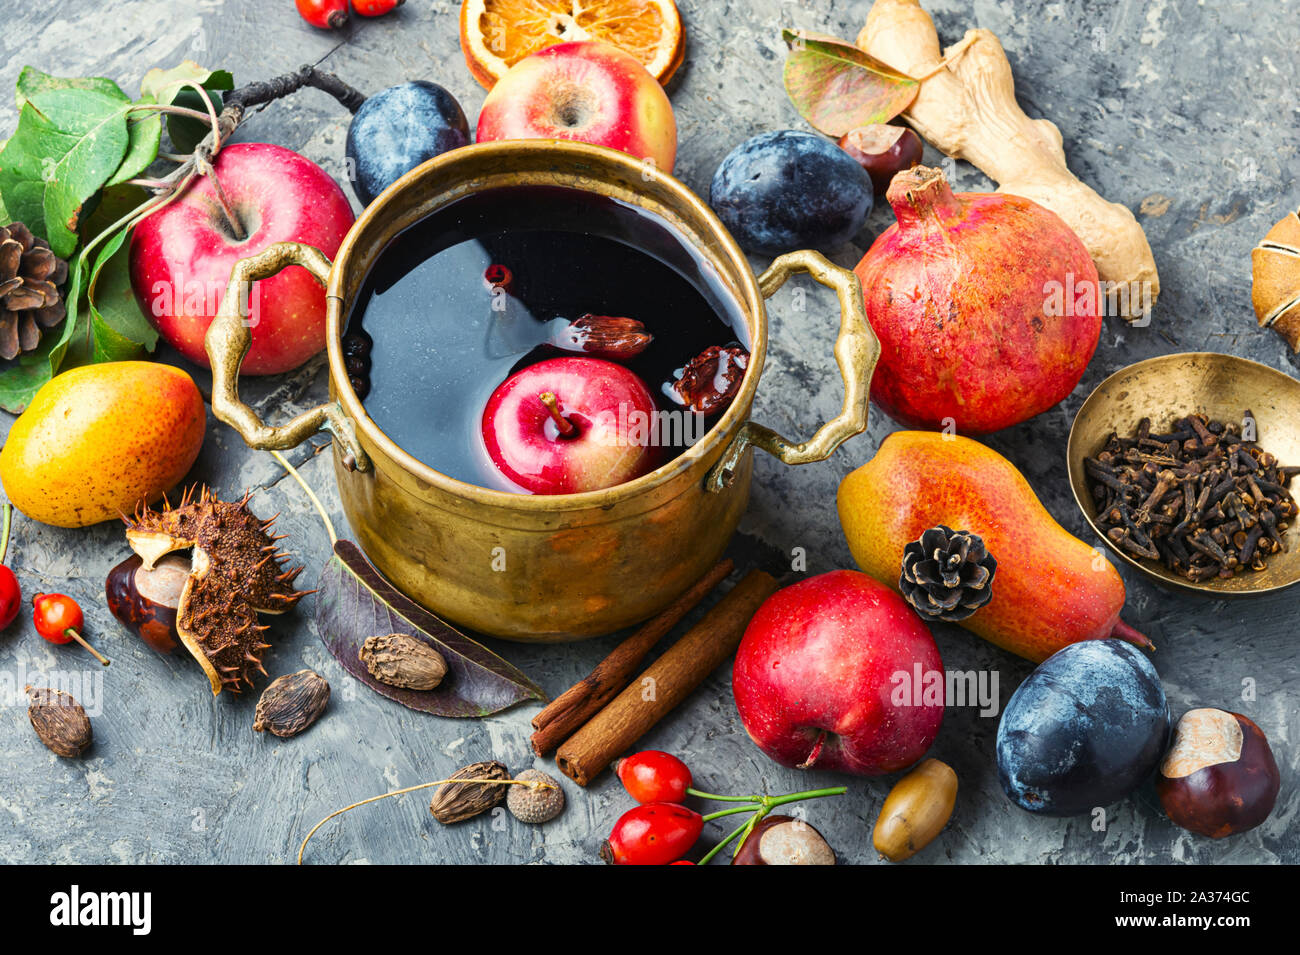 Vin brulé in un elegante recipiente.autunno caldo bevanda alcolica Foto Stock